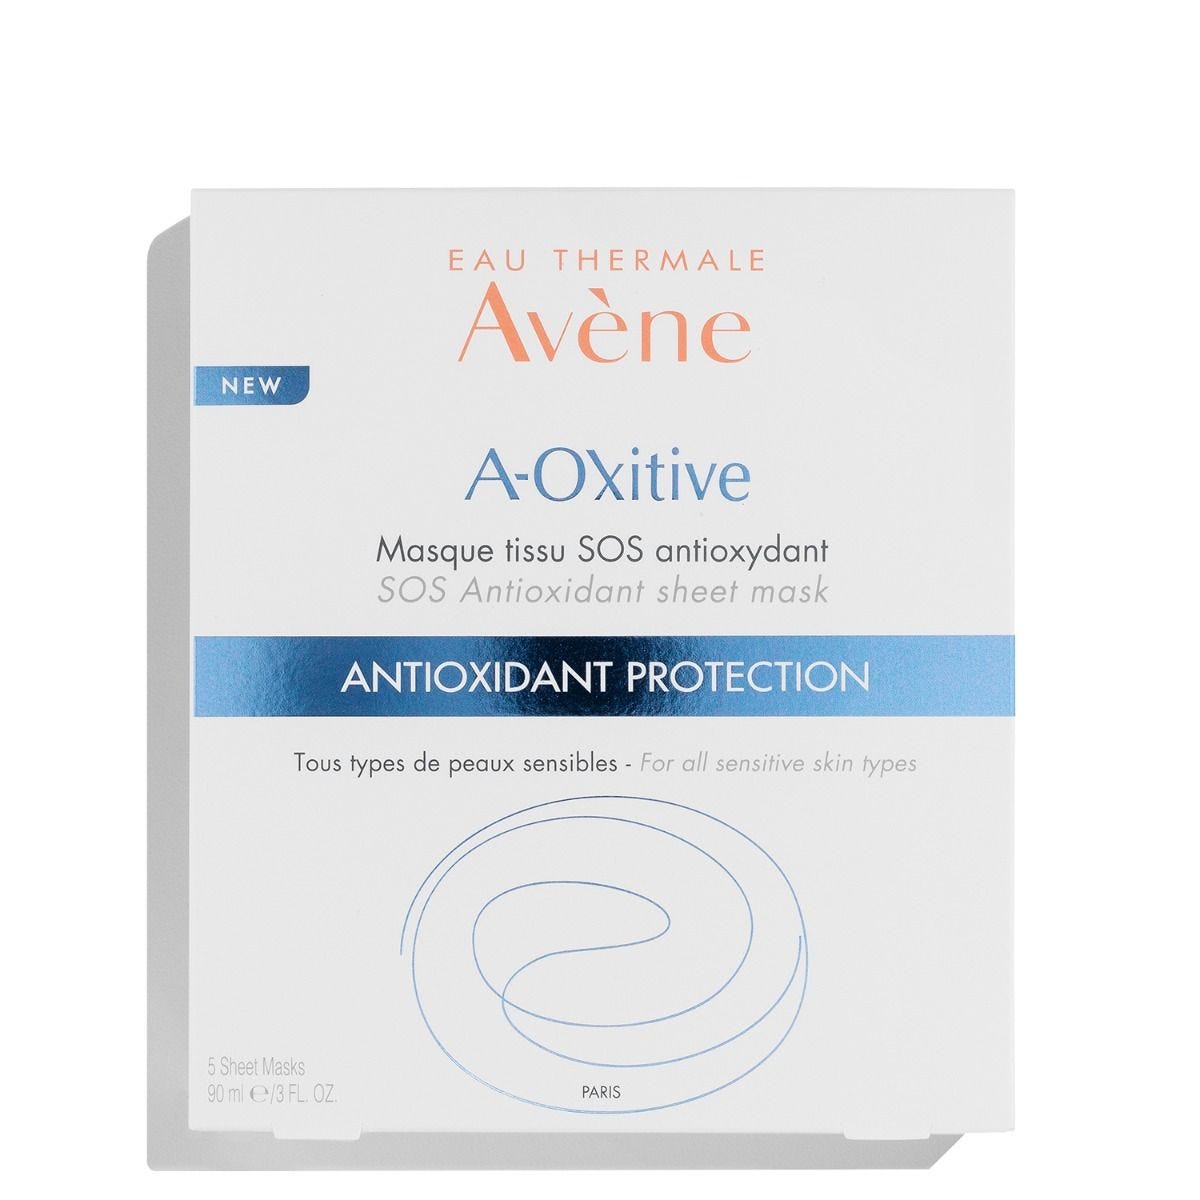 A-Oxitive SOS Antioxidant Sheet Mask